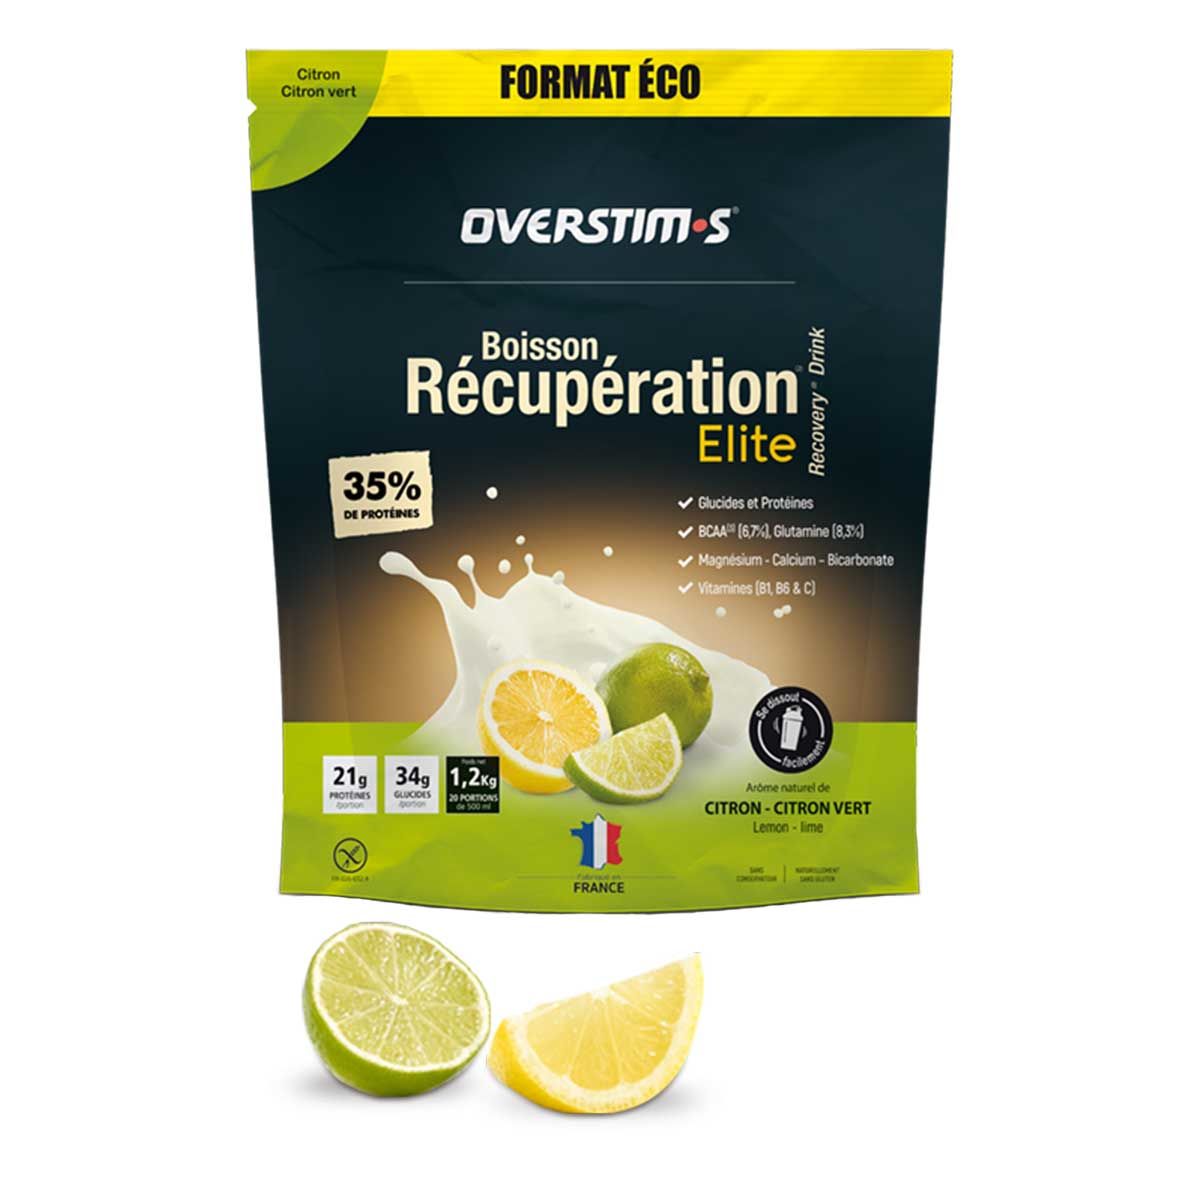 Boisson de récupération Elite Overstim.s - 1,2 kg - Citron, citron vert